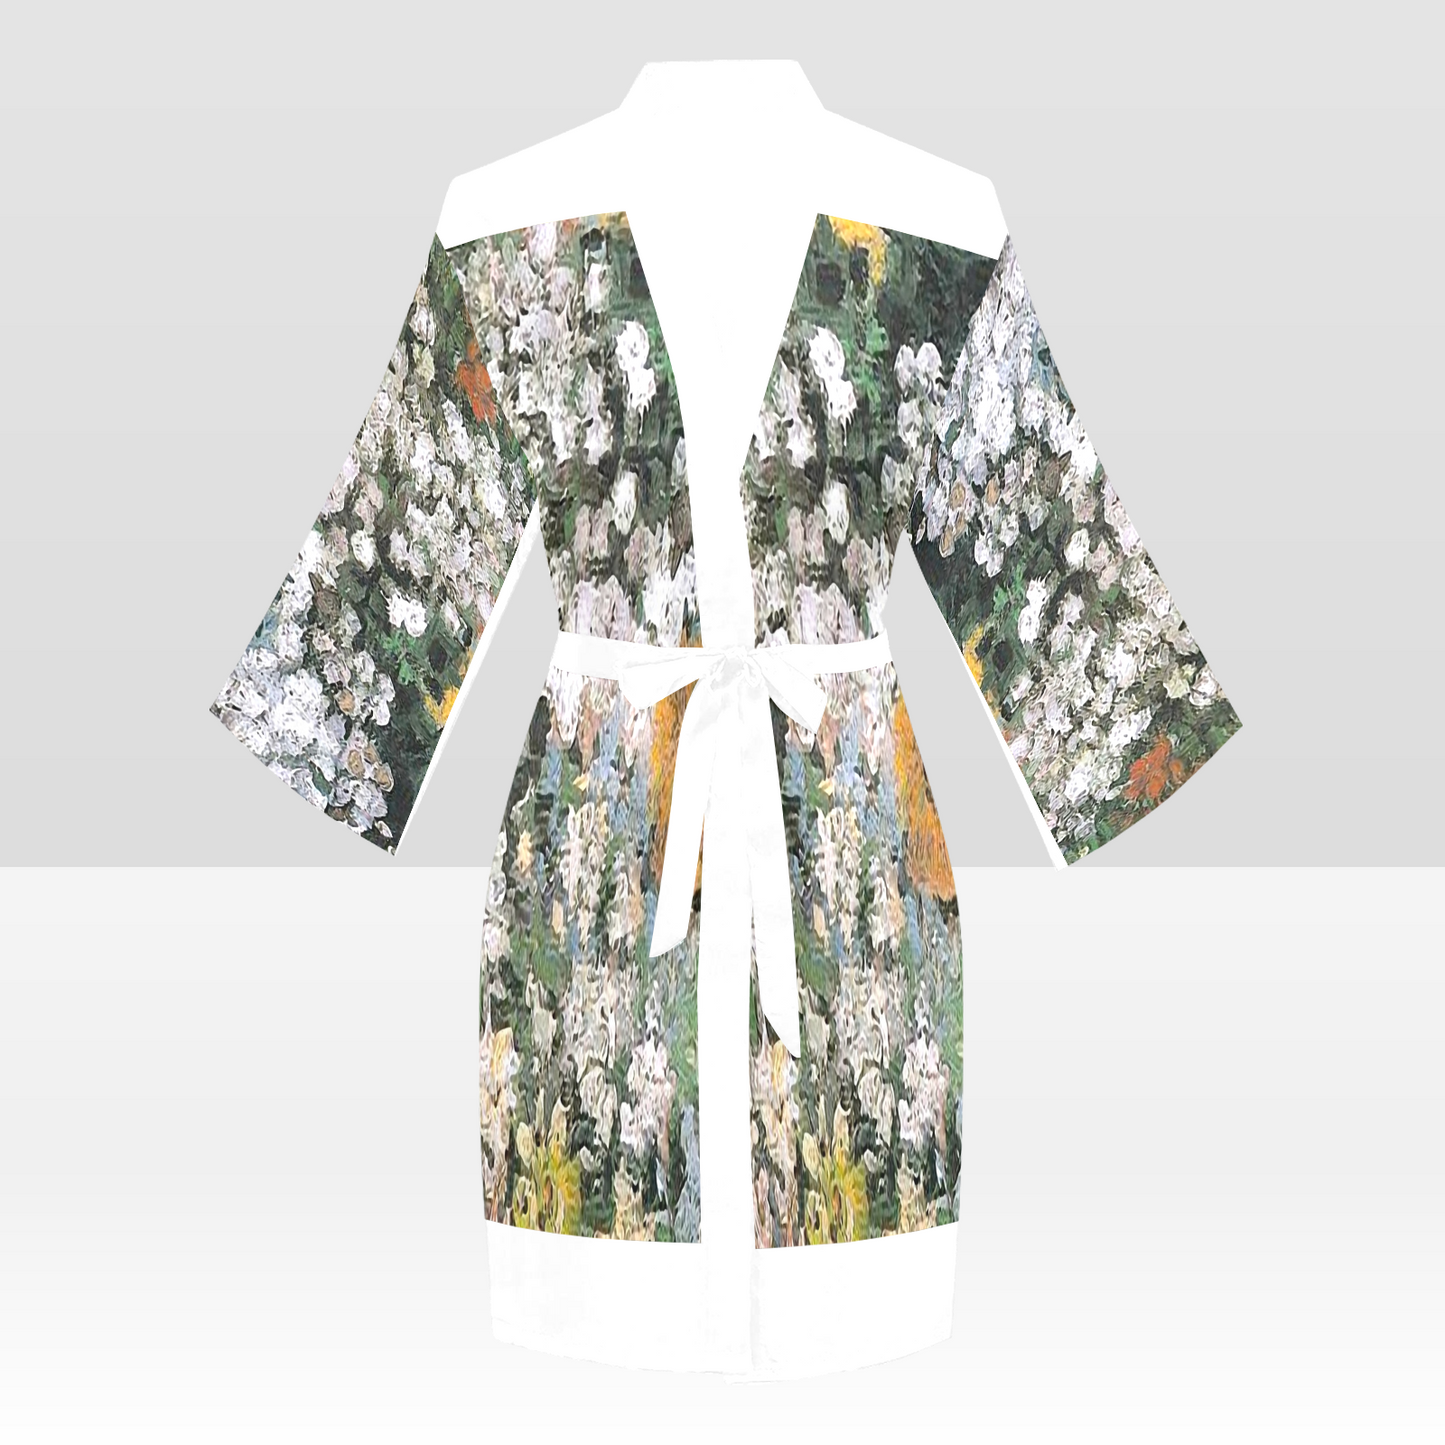 Vintage Floral Kimono Robe, Black or White Trim, Sizes XS to 2XL, Design 07